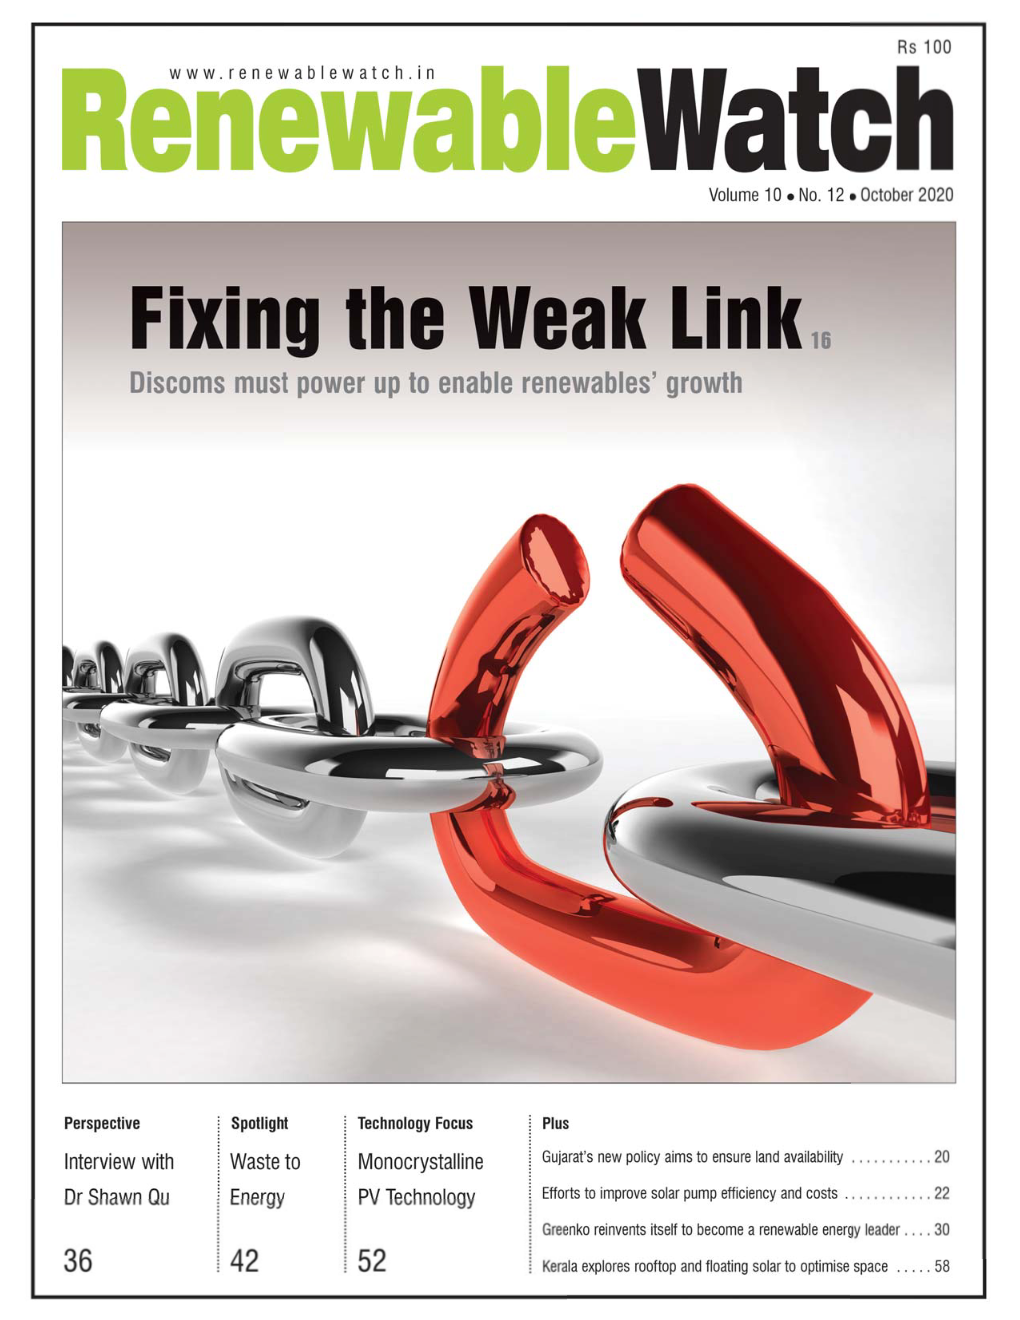 Fixing the Weak Link, Renewable Watch